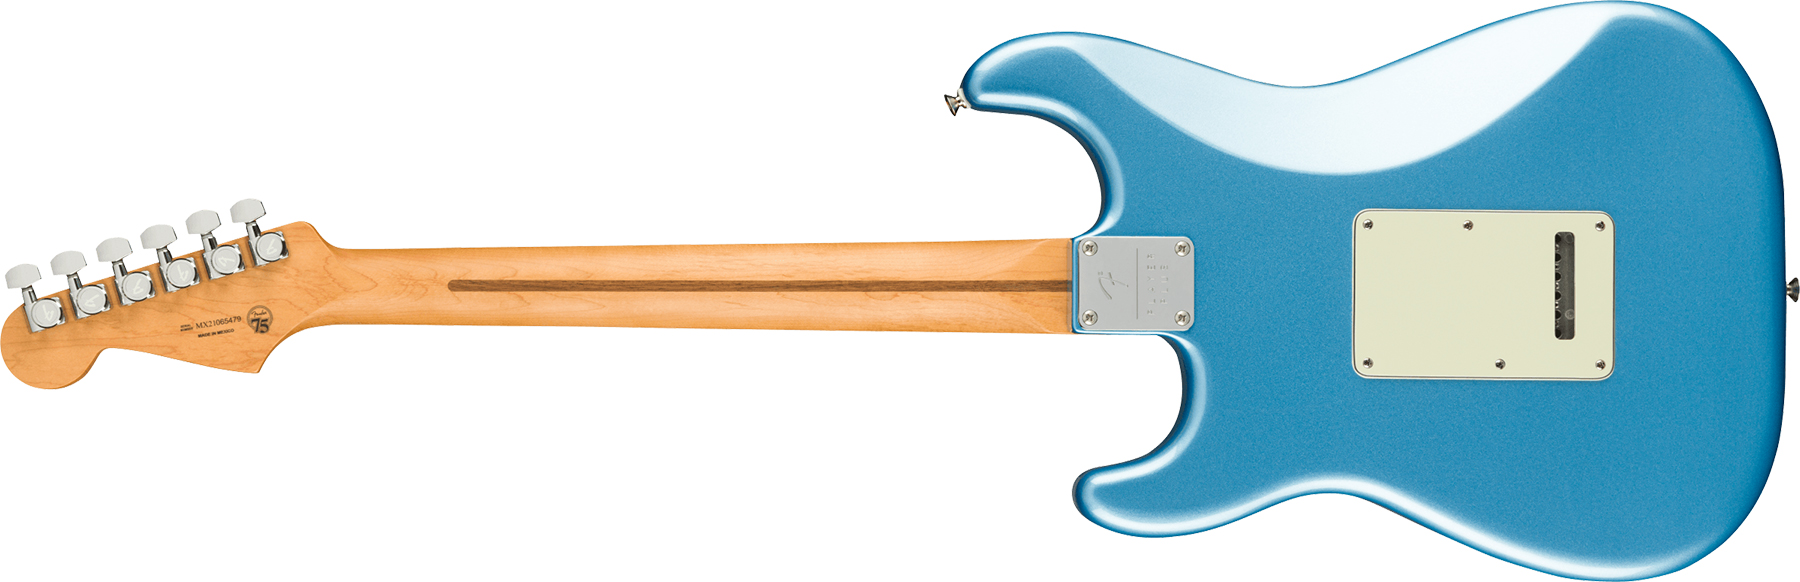 Fender Strat Player Plus Mex 3s Trem Pf - Opal Spark - E-Gitarre in Str-Form - Variation 1